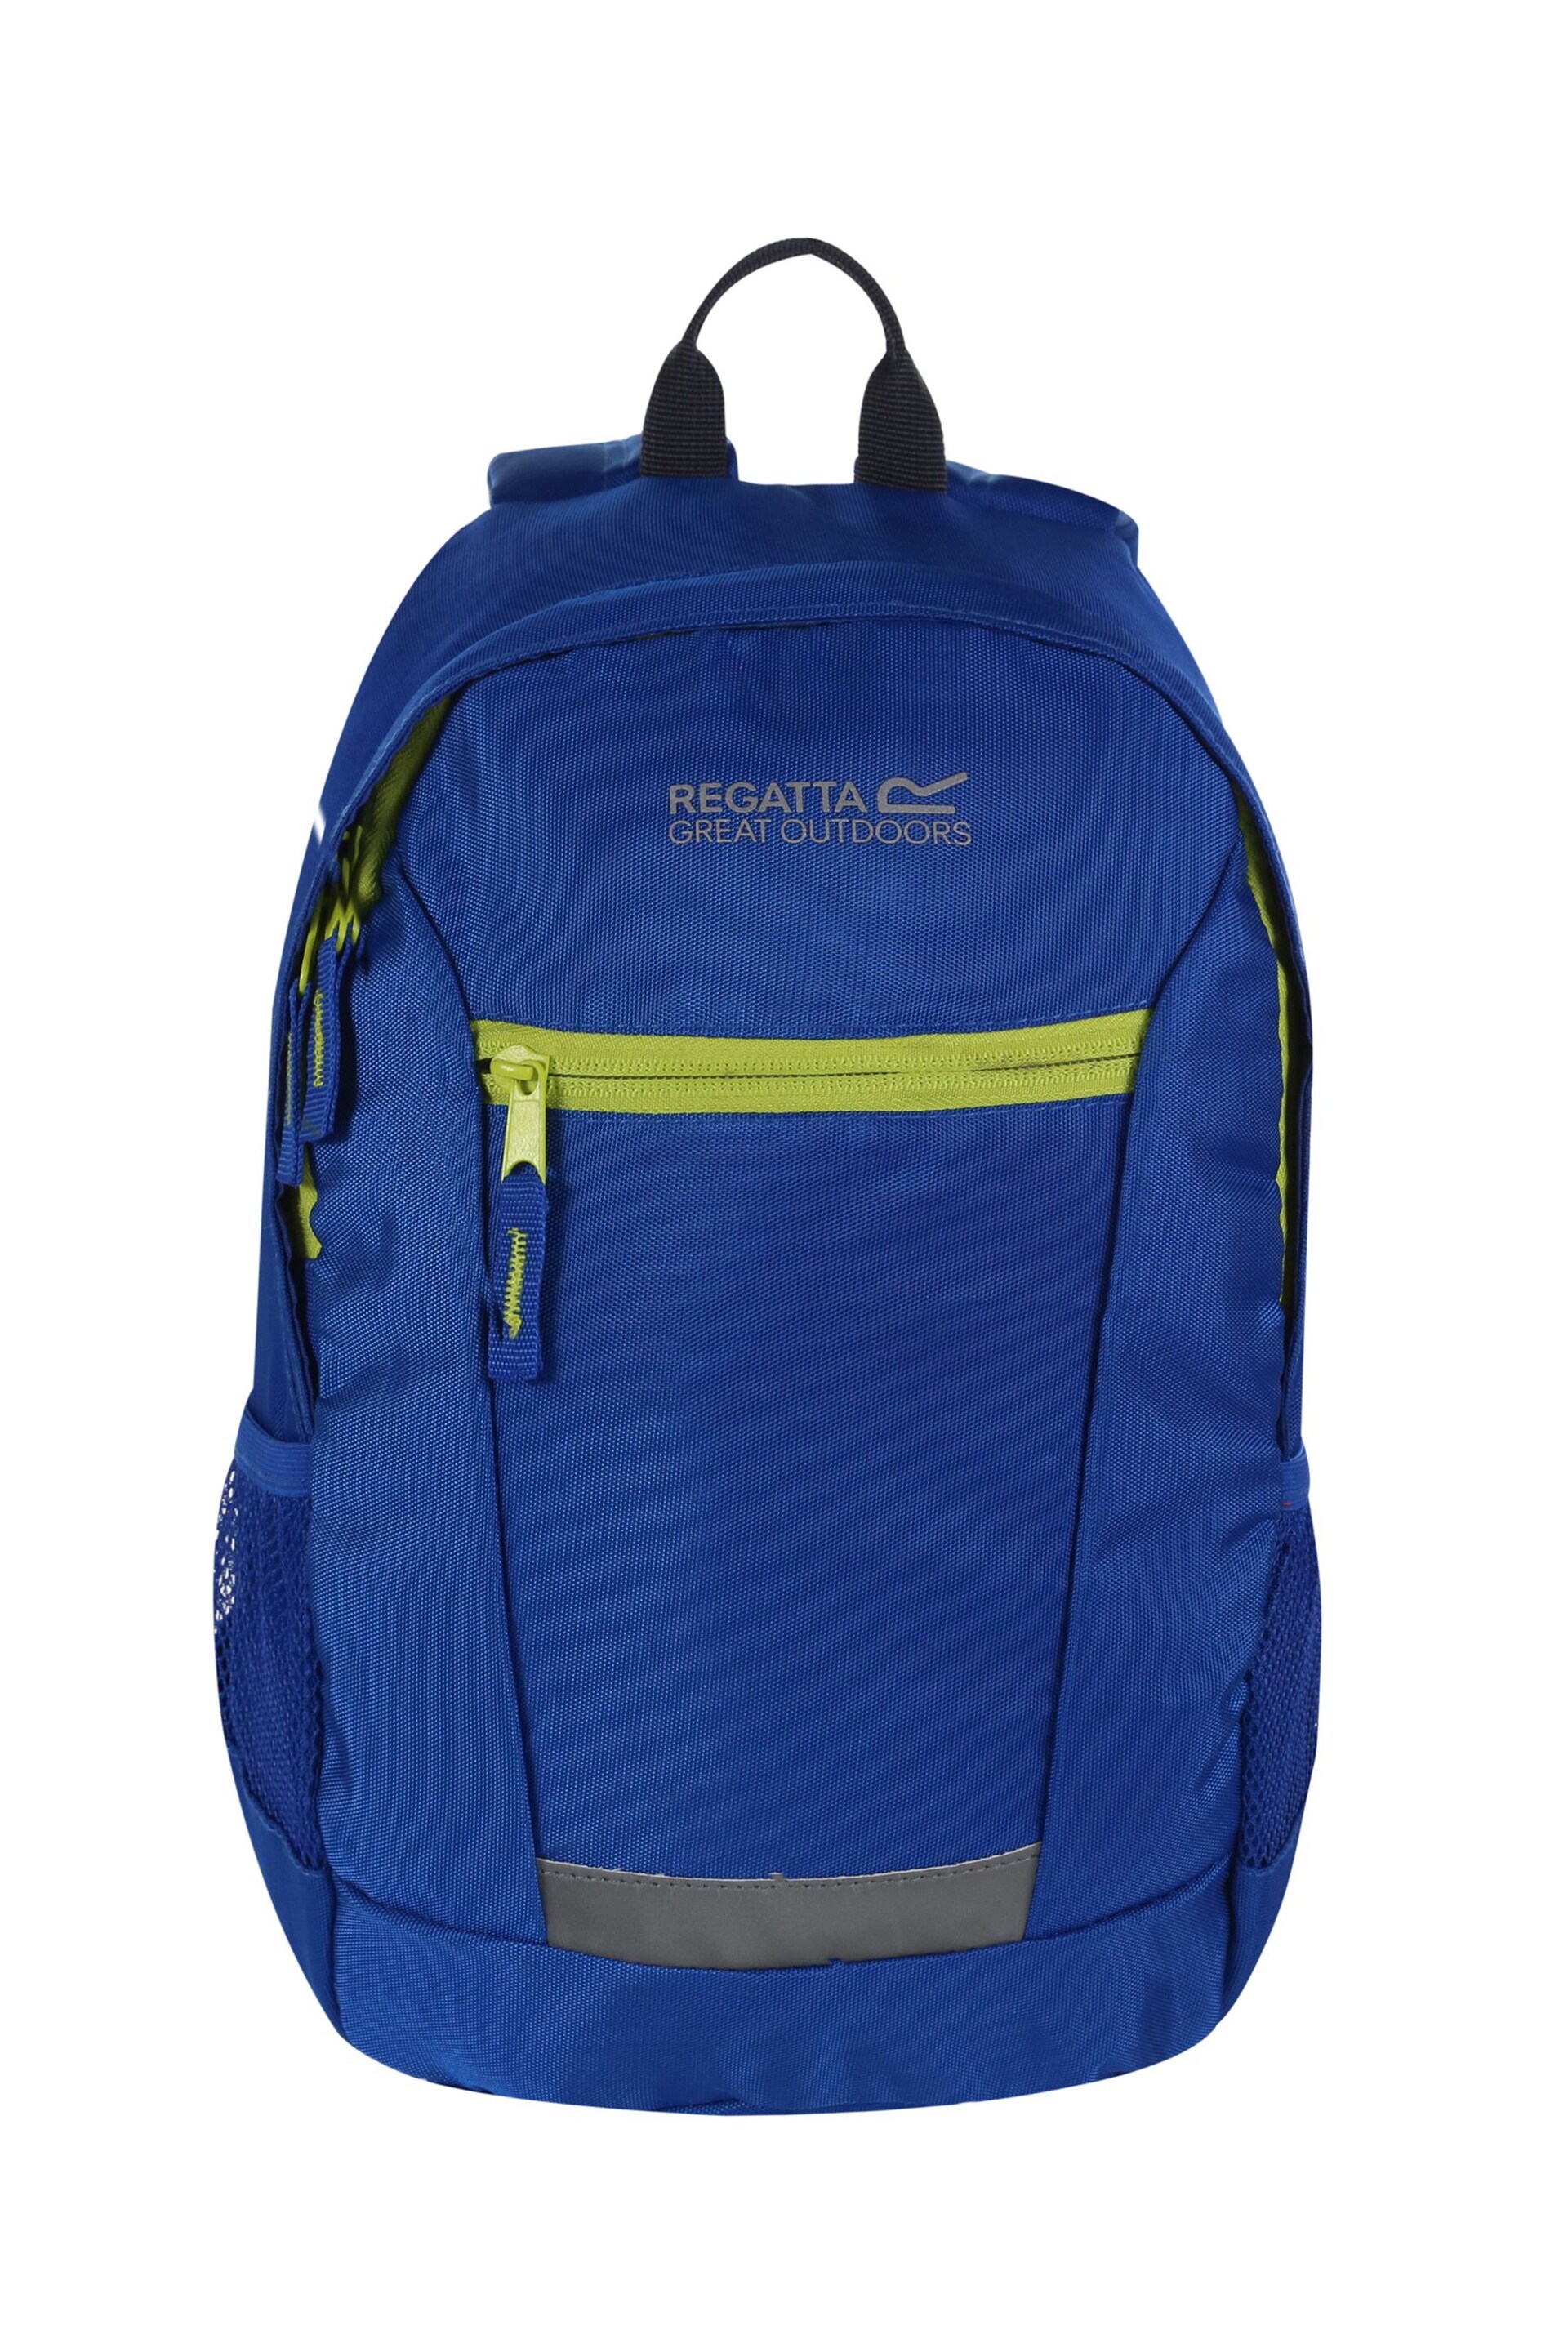 Regatta Blue Jaxon III 10L Childrens Backpack - Image 2 of 4